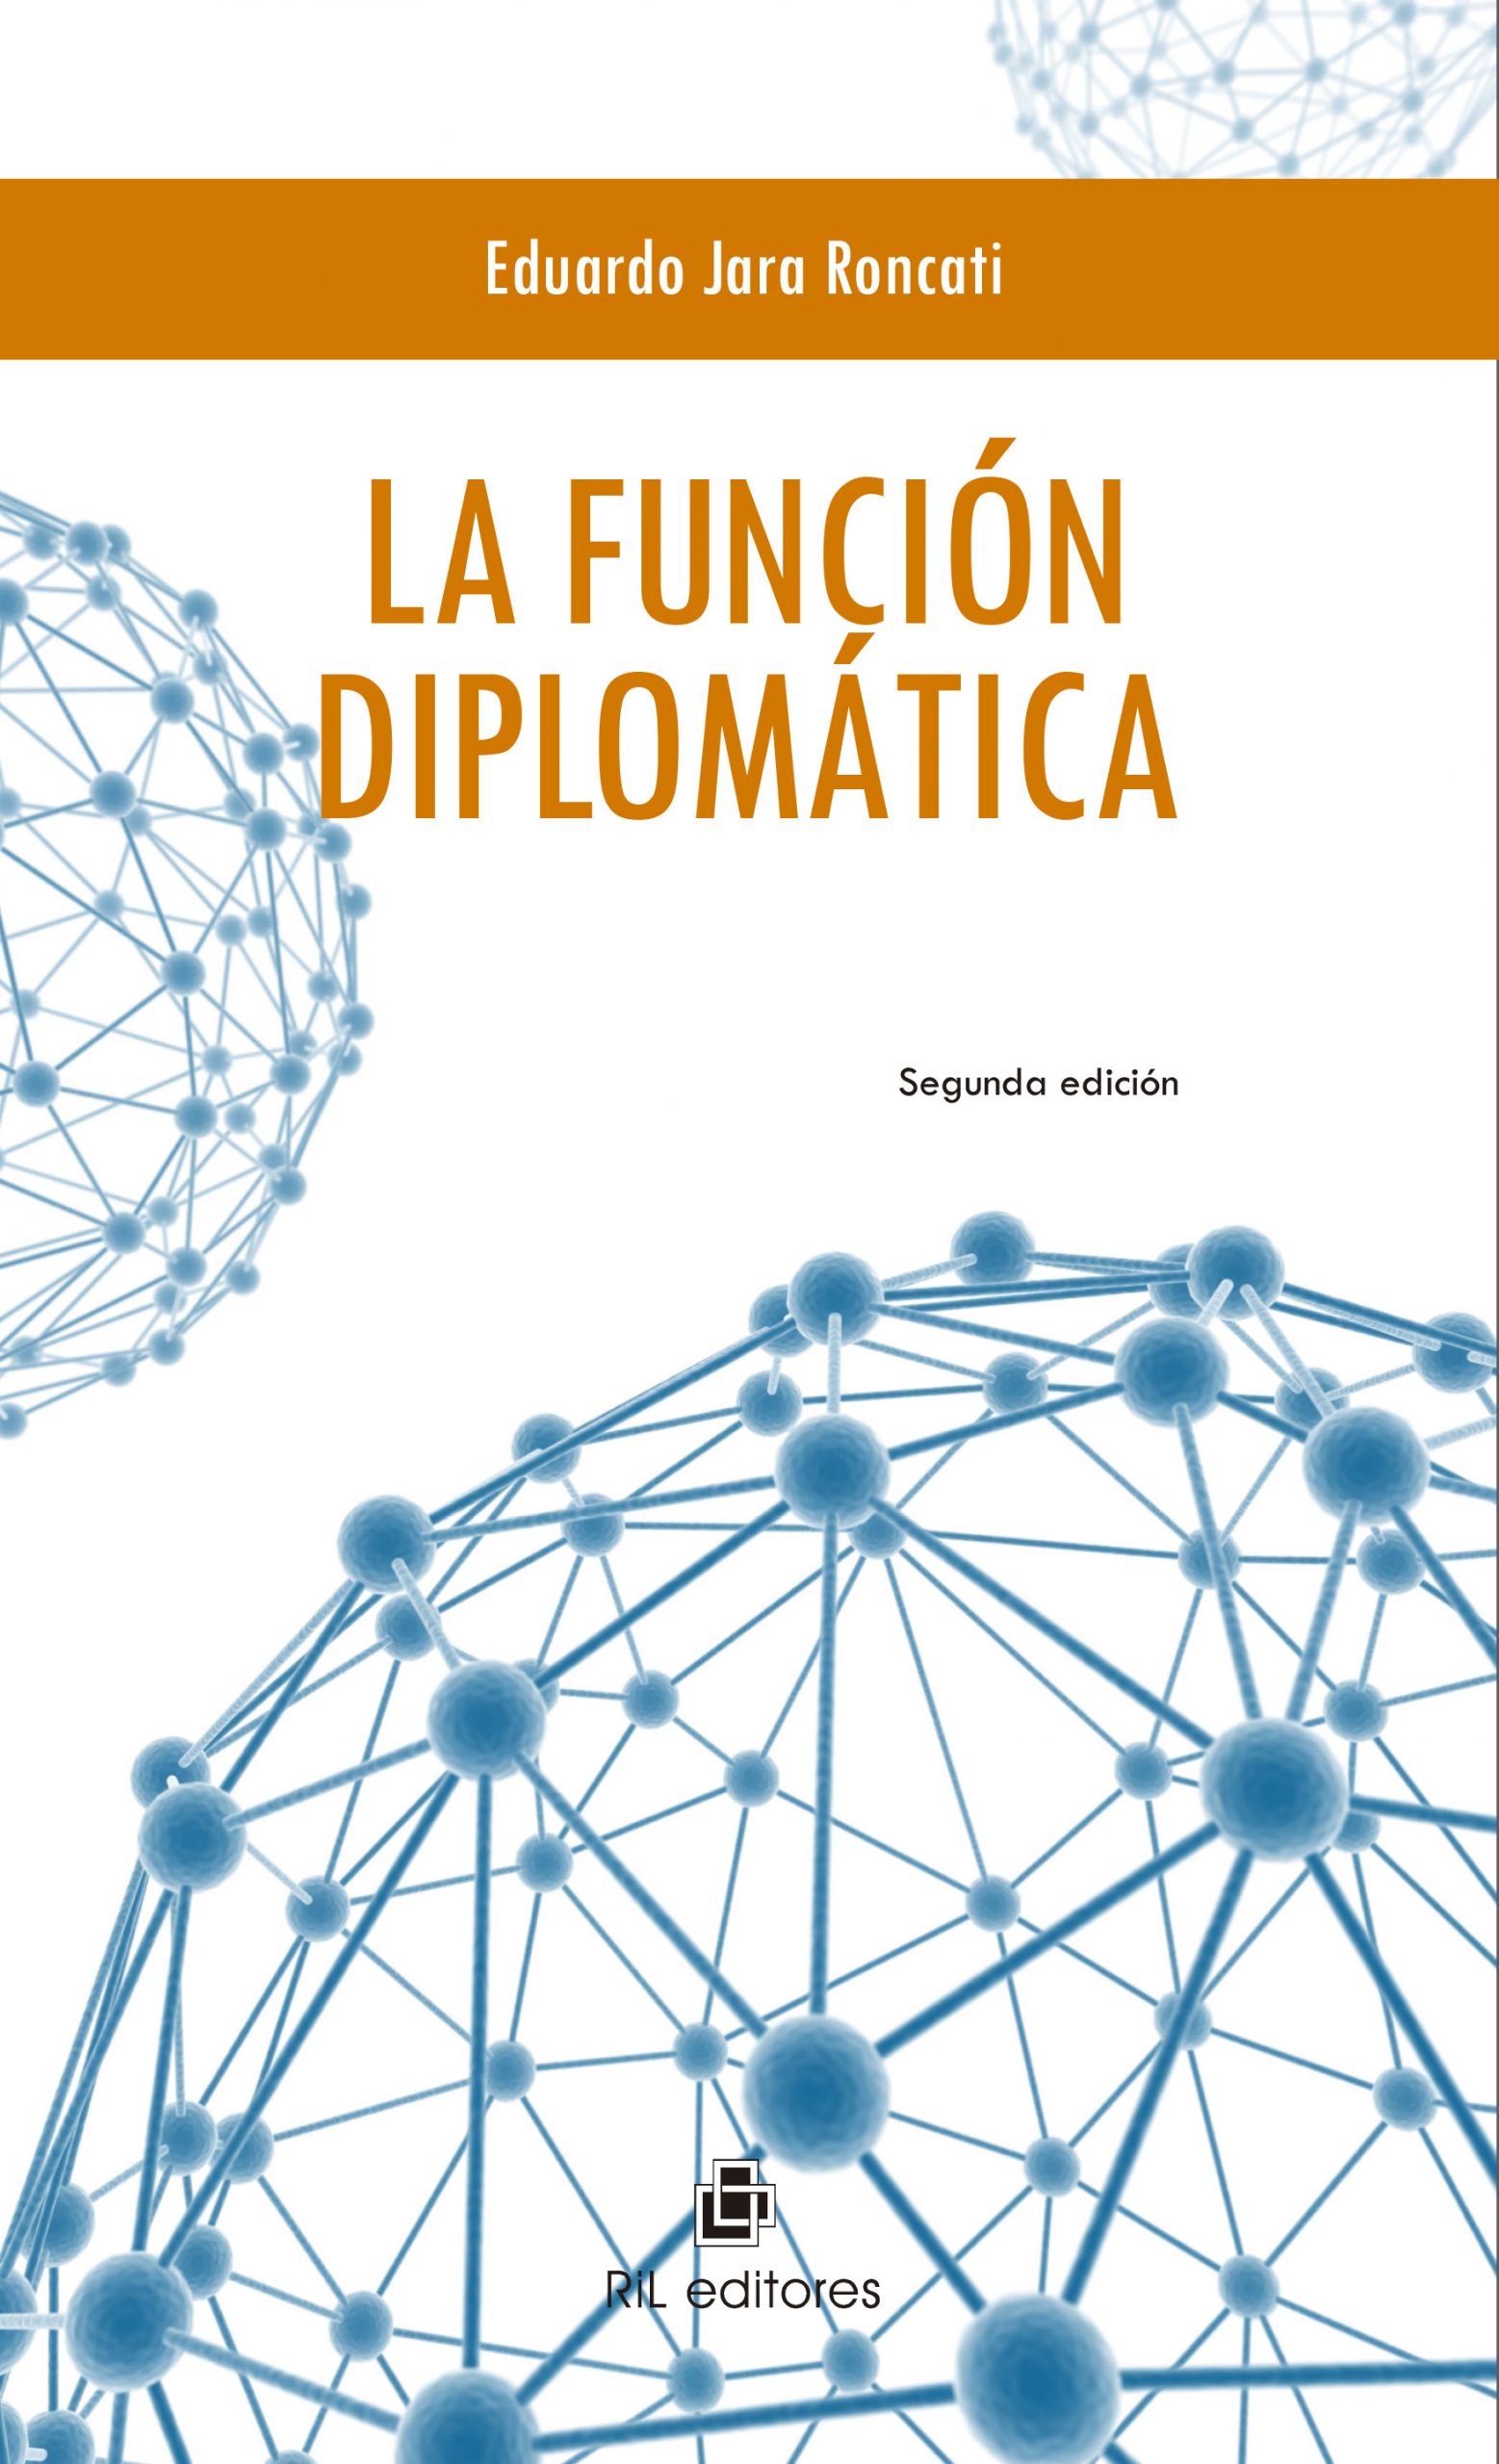 La función diplomática - 2da edición 1